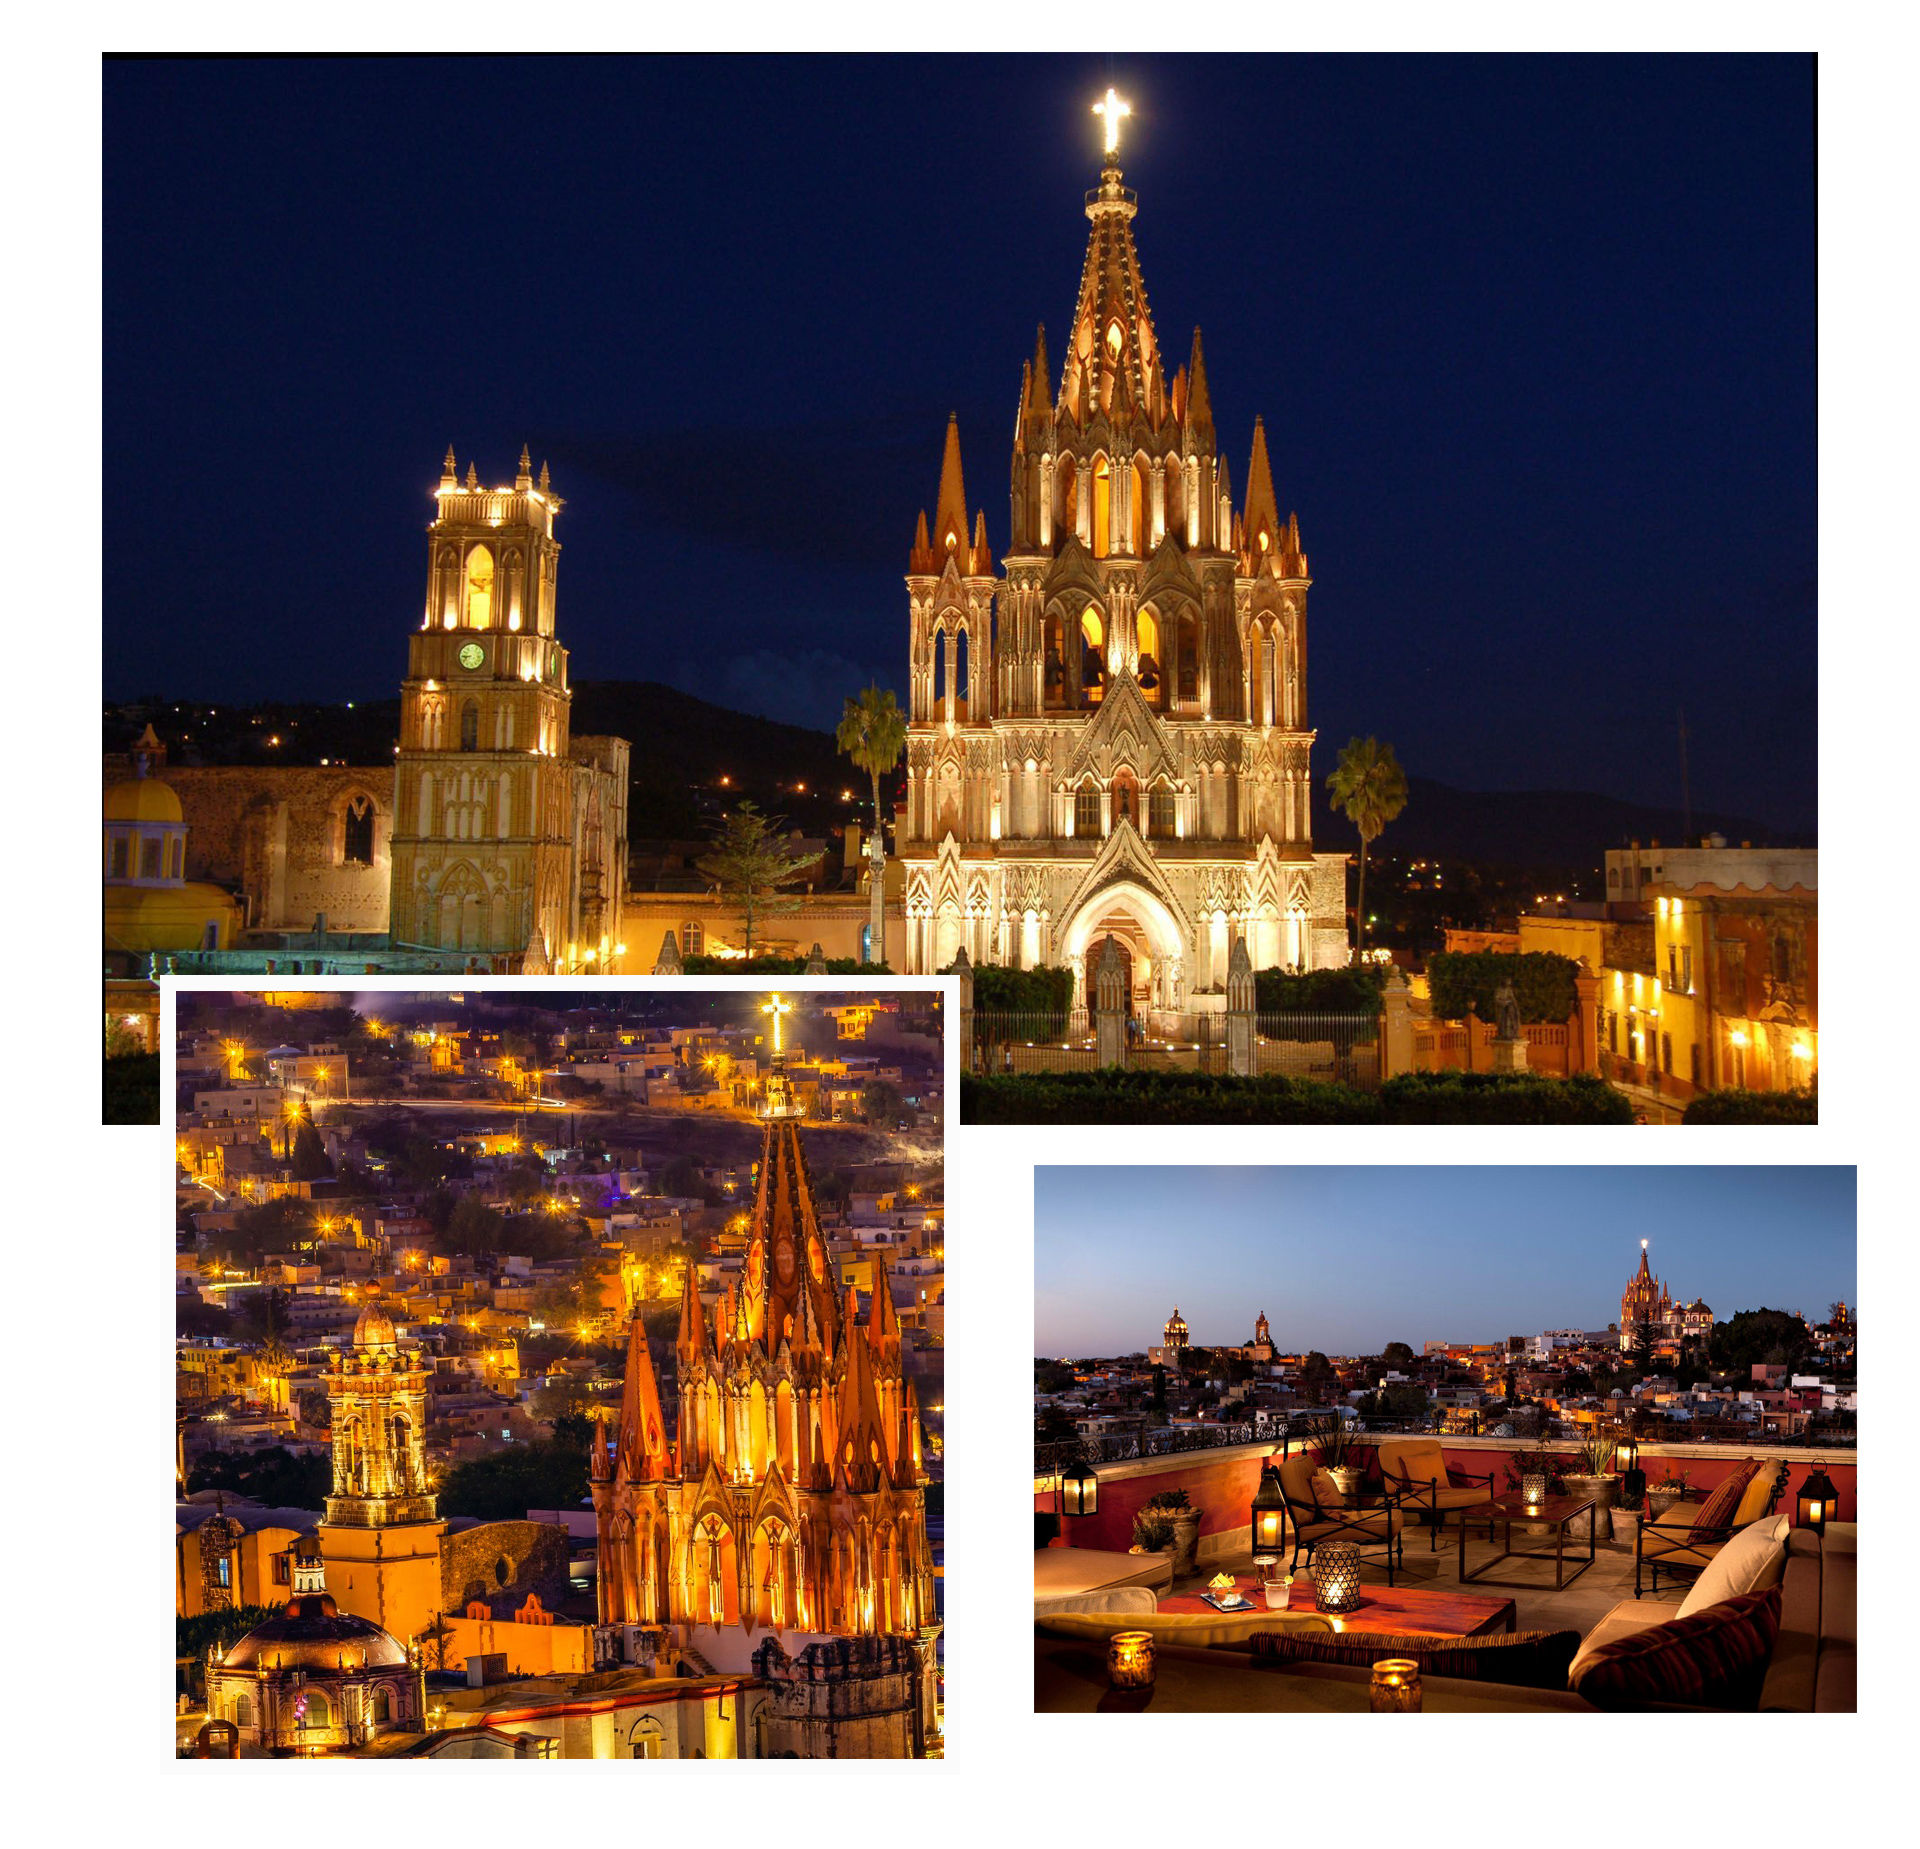 Chiêm ngưỡng thành phố cổ kính đẹp lộng lẫy ở Mexico - 10